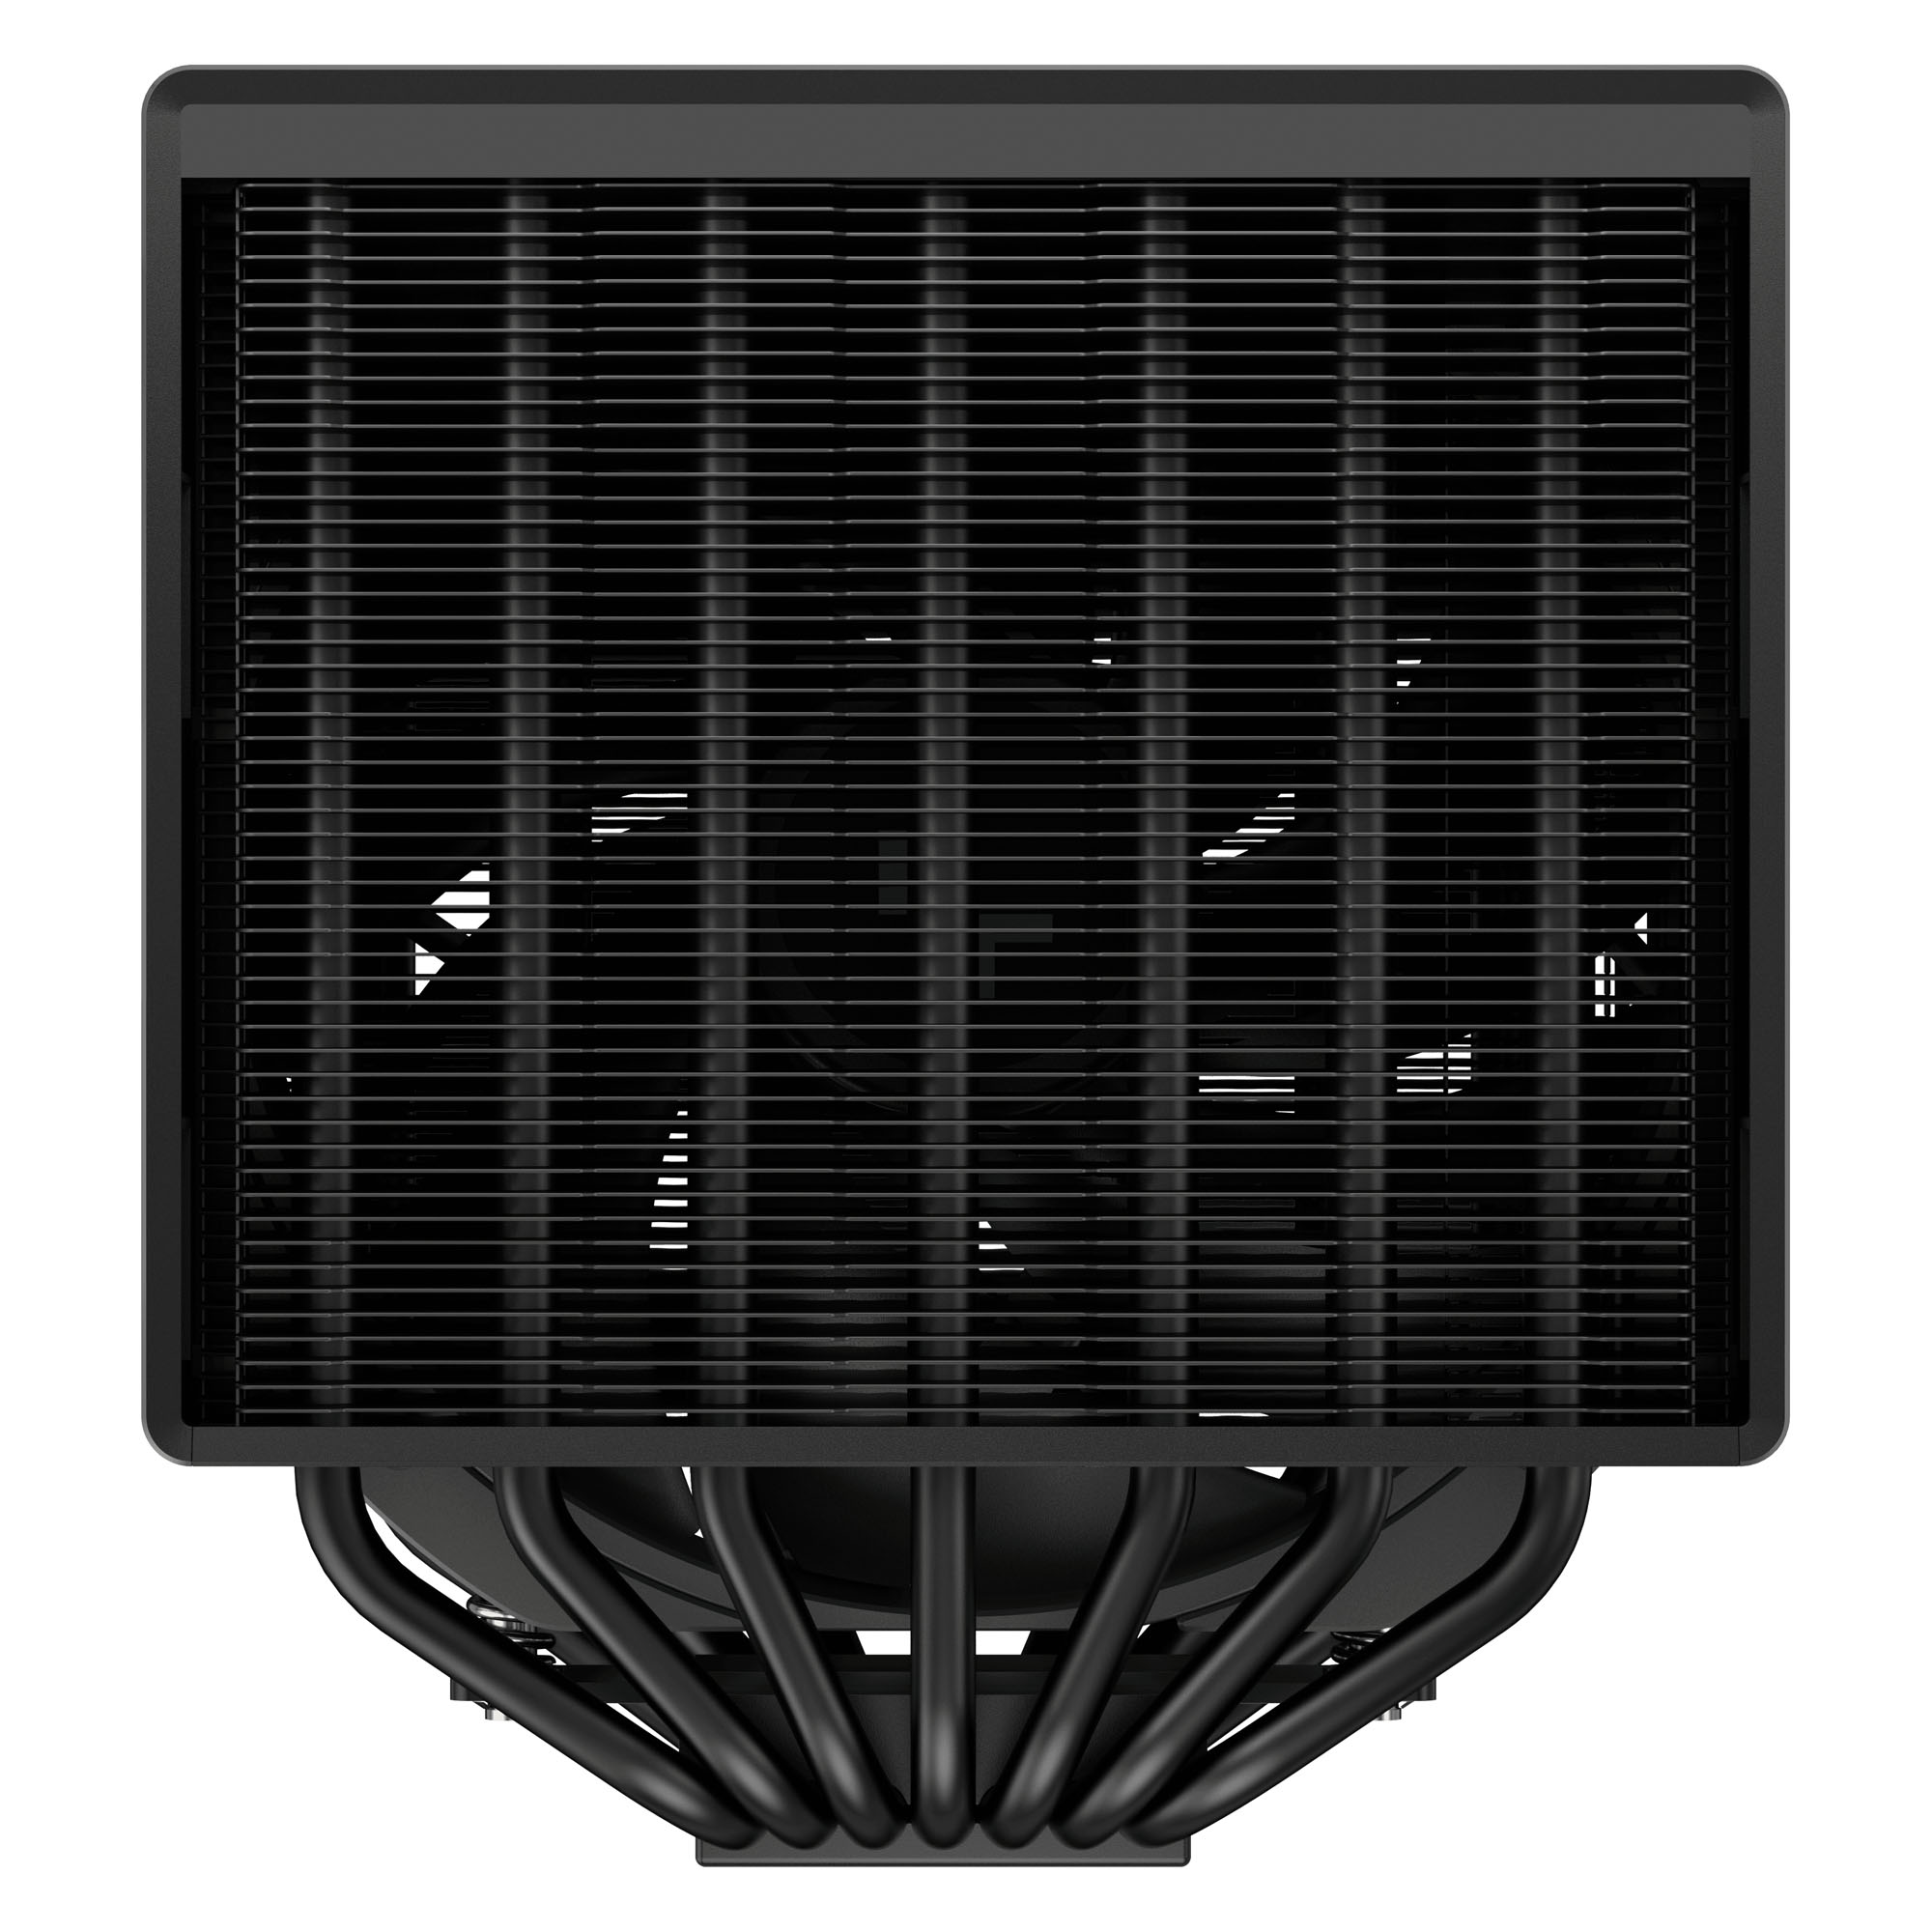 DeepCool - DeepCool ASSASSIN 4S 140mm Fan CPU Cooler - Black